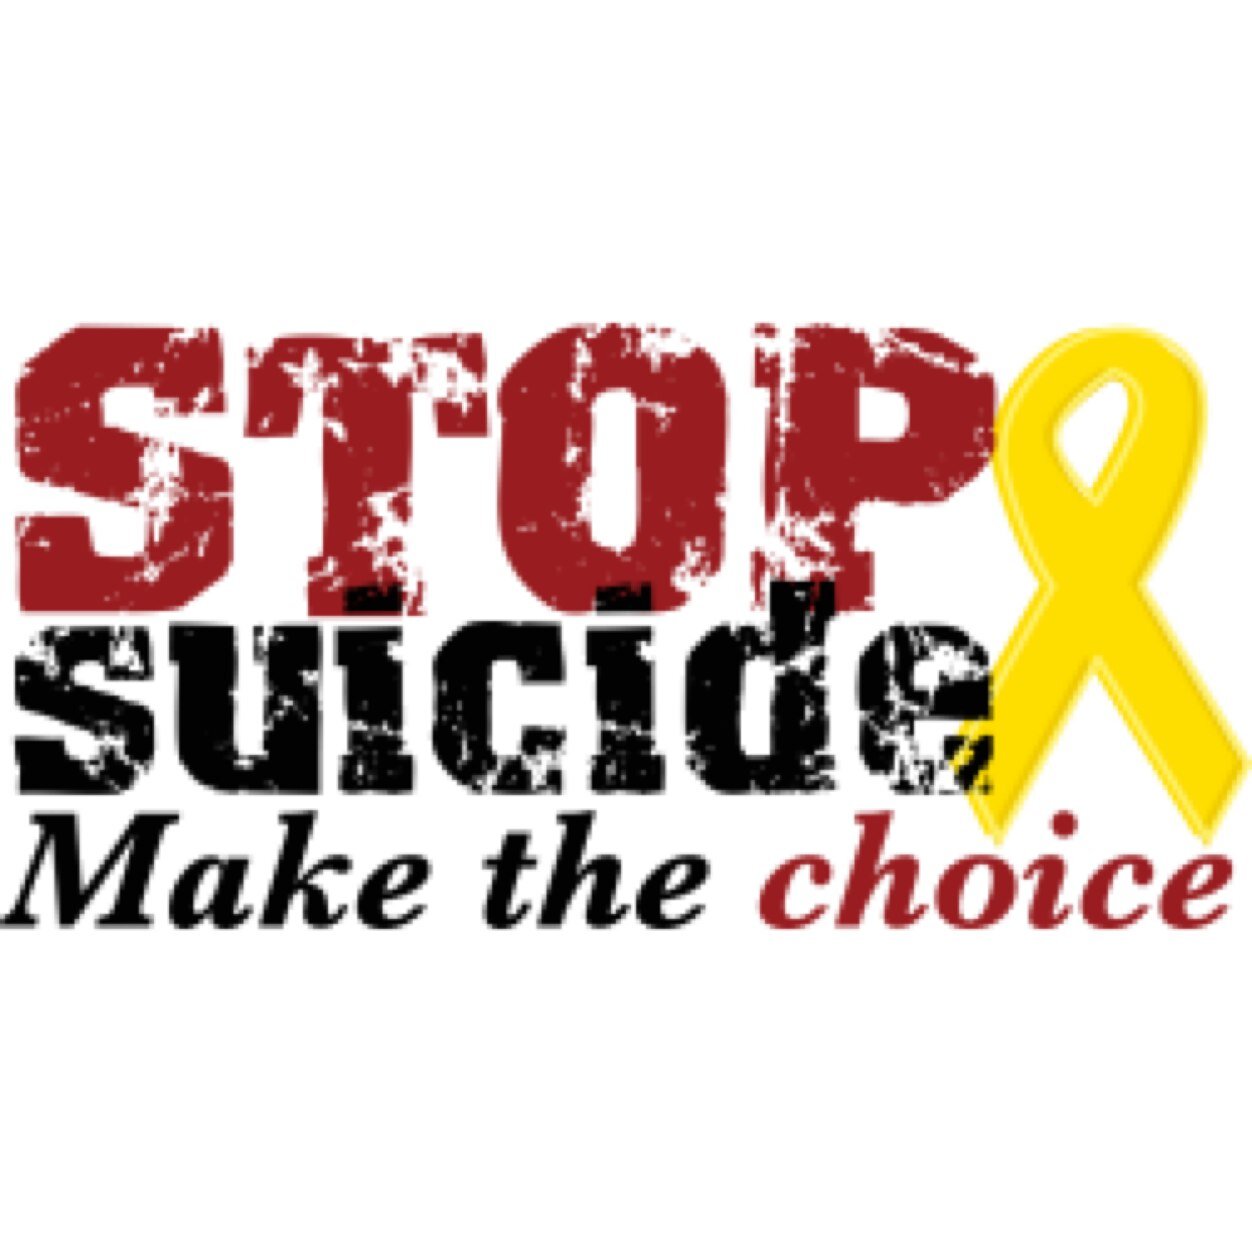 Anisa• Abian• Jada• Bonita• Suicide twiter follow up• School project•✌️SAY NO TO SUICIDE!